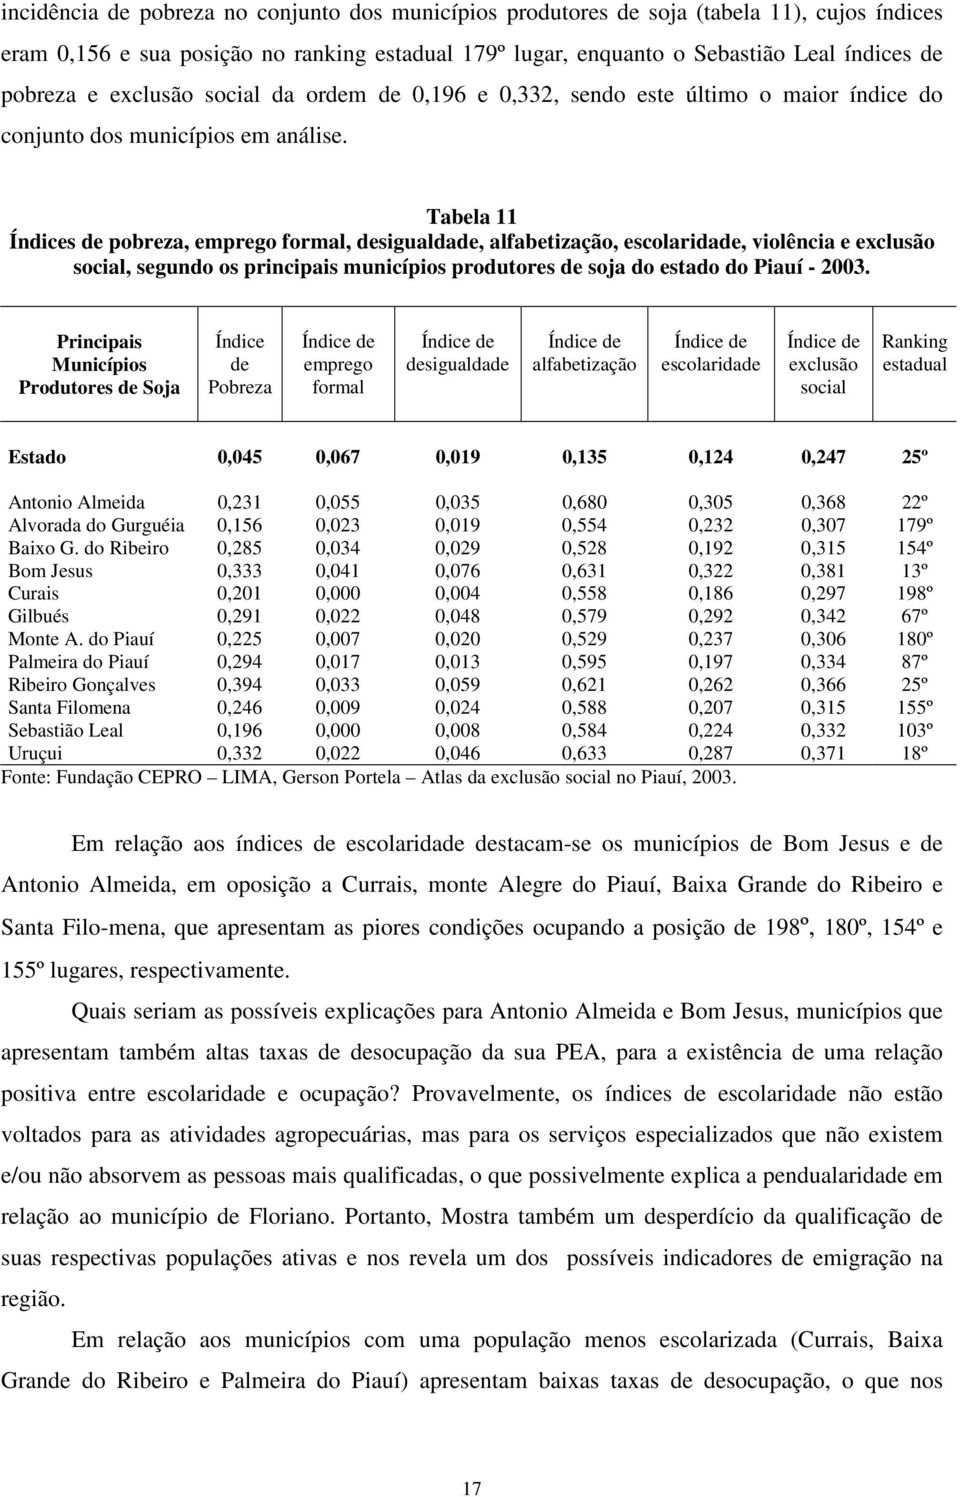 Tabela 11 Índices de pobreza, emprego formal, desigualdade, alfabetização, escolaridade, violência e exclusão social, segundo os principais municípios produtores de soja do estado do Piauí - 2003.